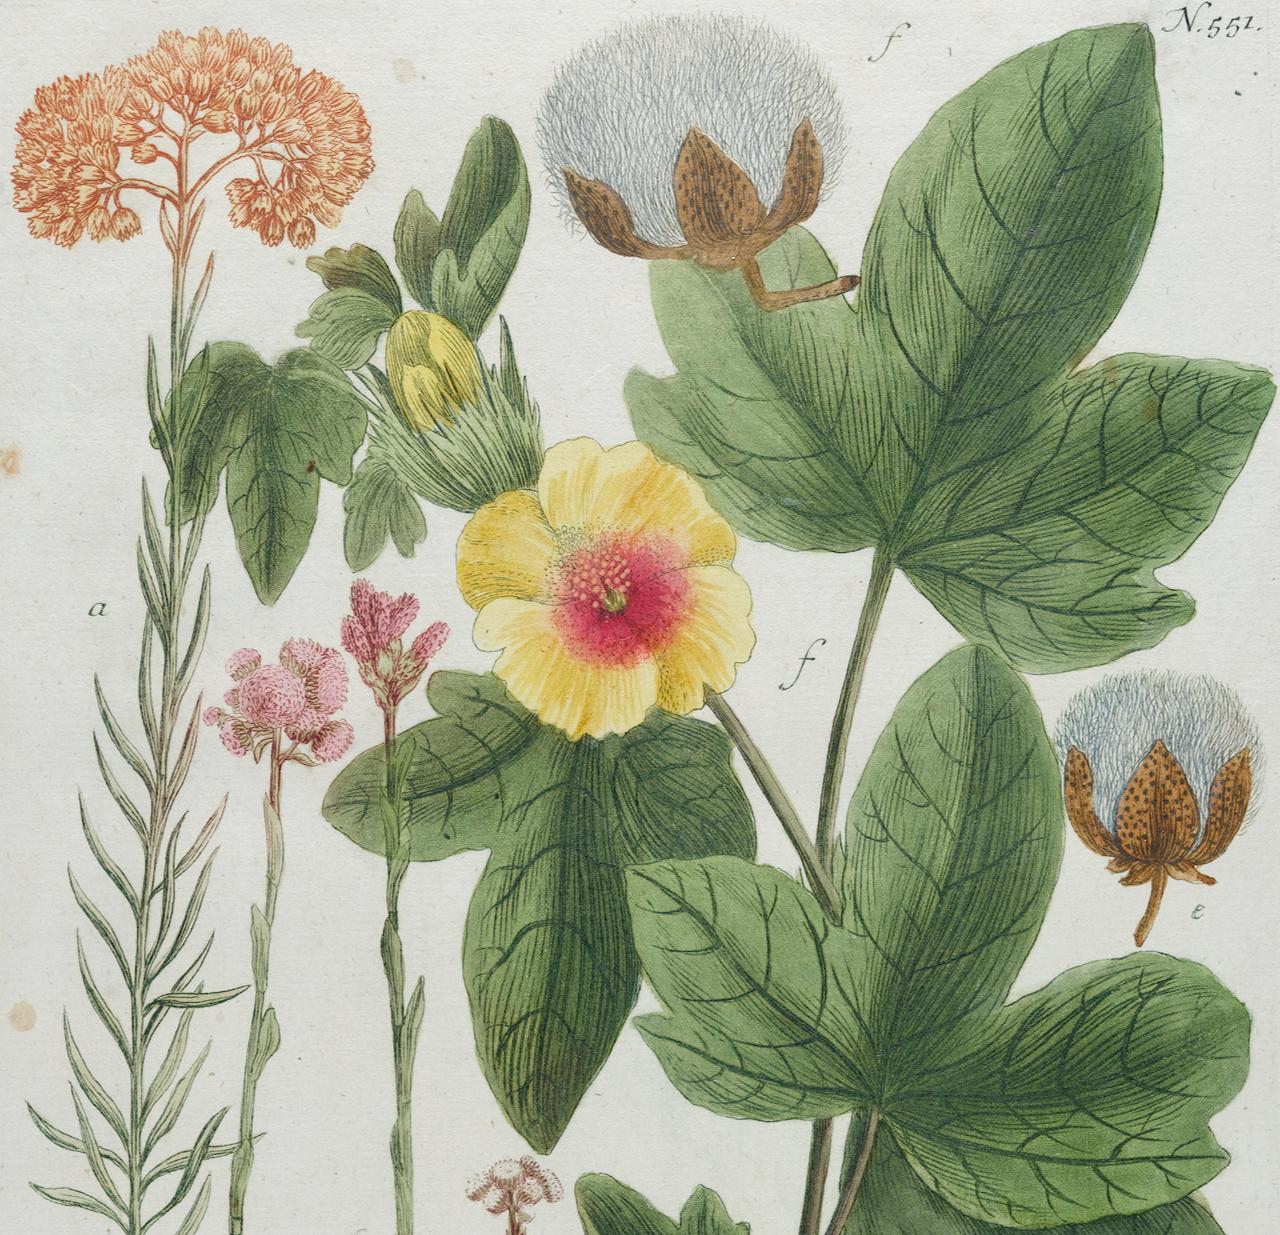 Baumwollpflanzgefäß aus Baumwolle: Eine handkolorierte botanische Gravur aus dem 18. Jahrhundert von J. Weinmann (Naturalismus), Print, von Johann Wilhelm Weinmann